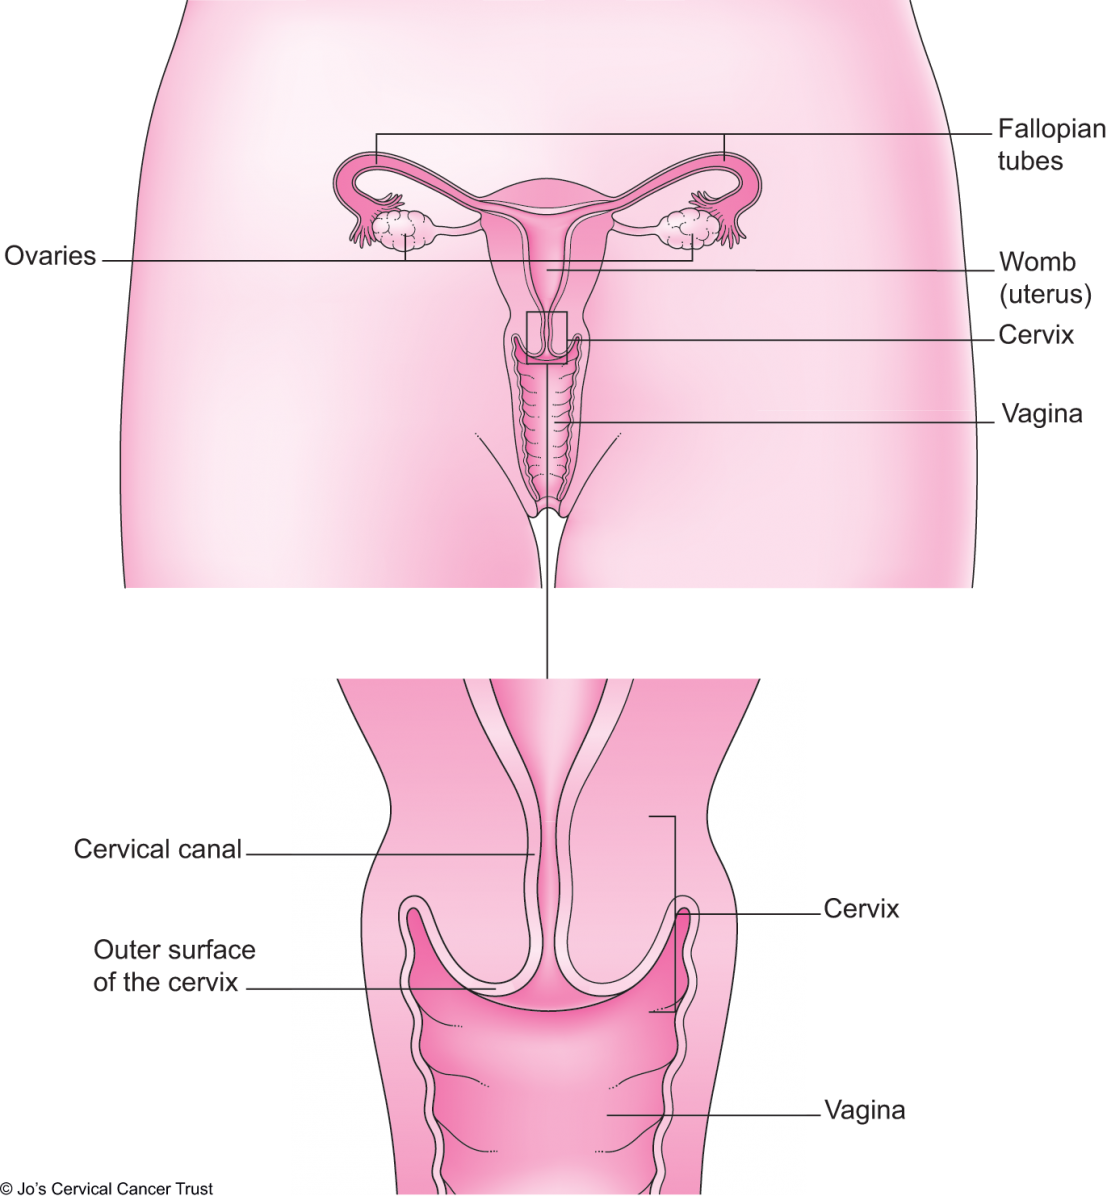 čípku ukazuje vnější povrch a děložního hrdla